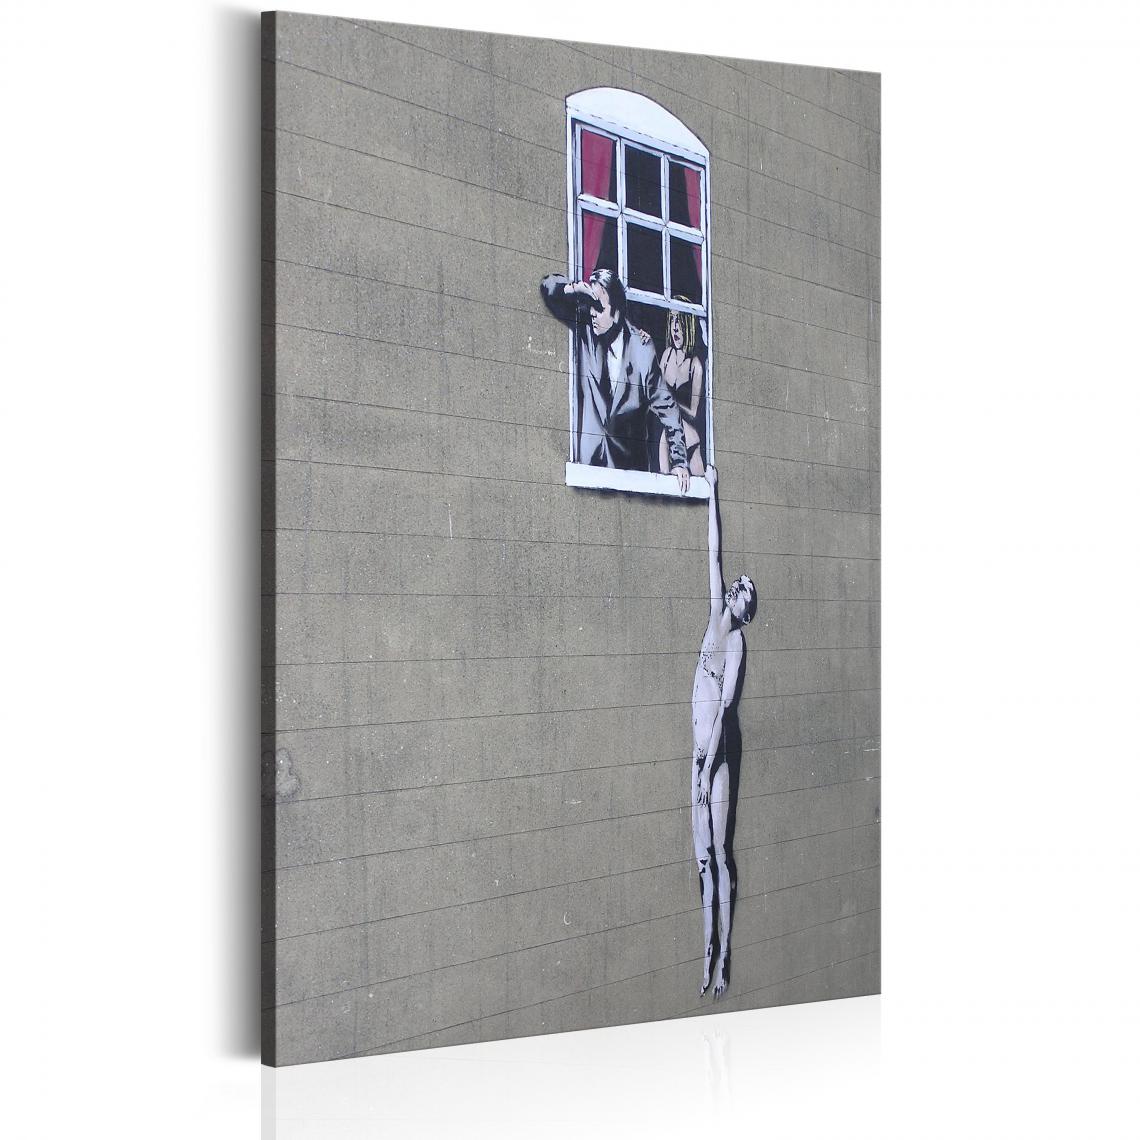 Decoshop26 - Tableau sur toile décoration murale image imprimée cadre en bois à suspendre Amant bien accroché par Banksy 80x120 cm 11_0003411 - Tableaux, peintures